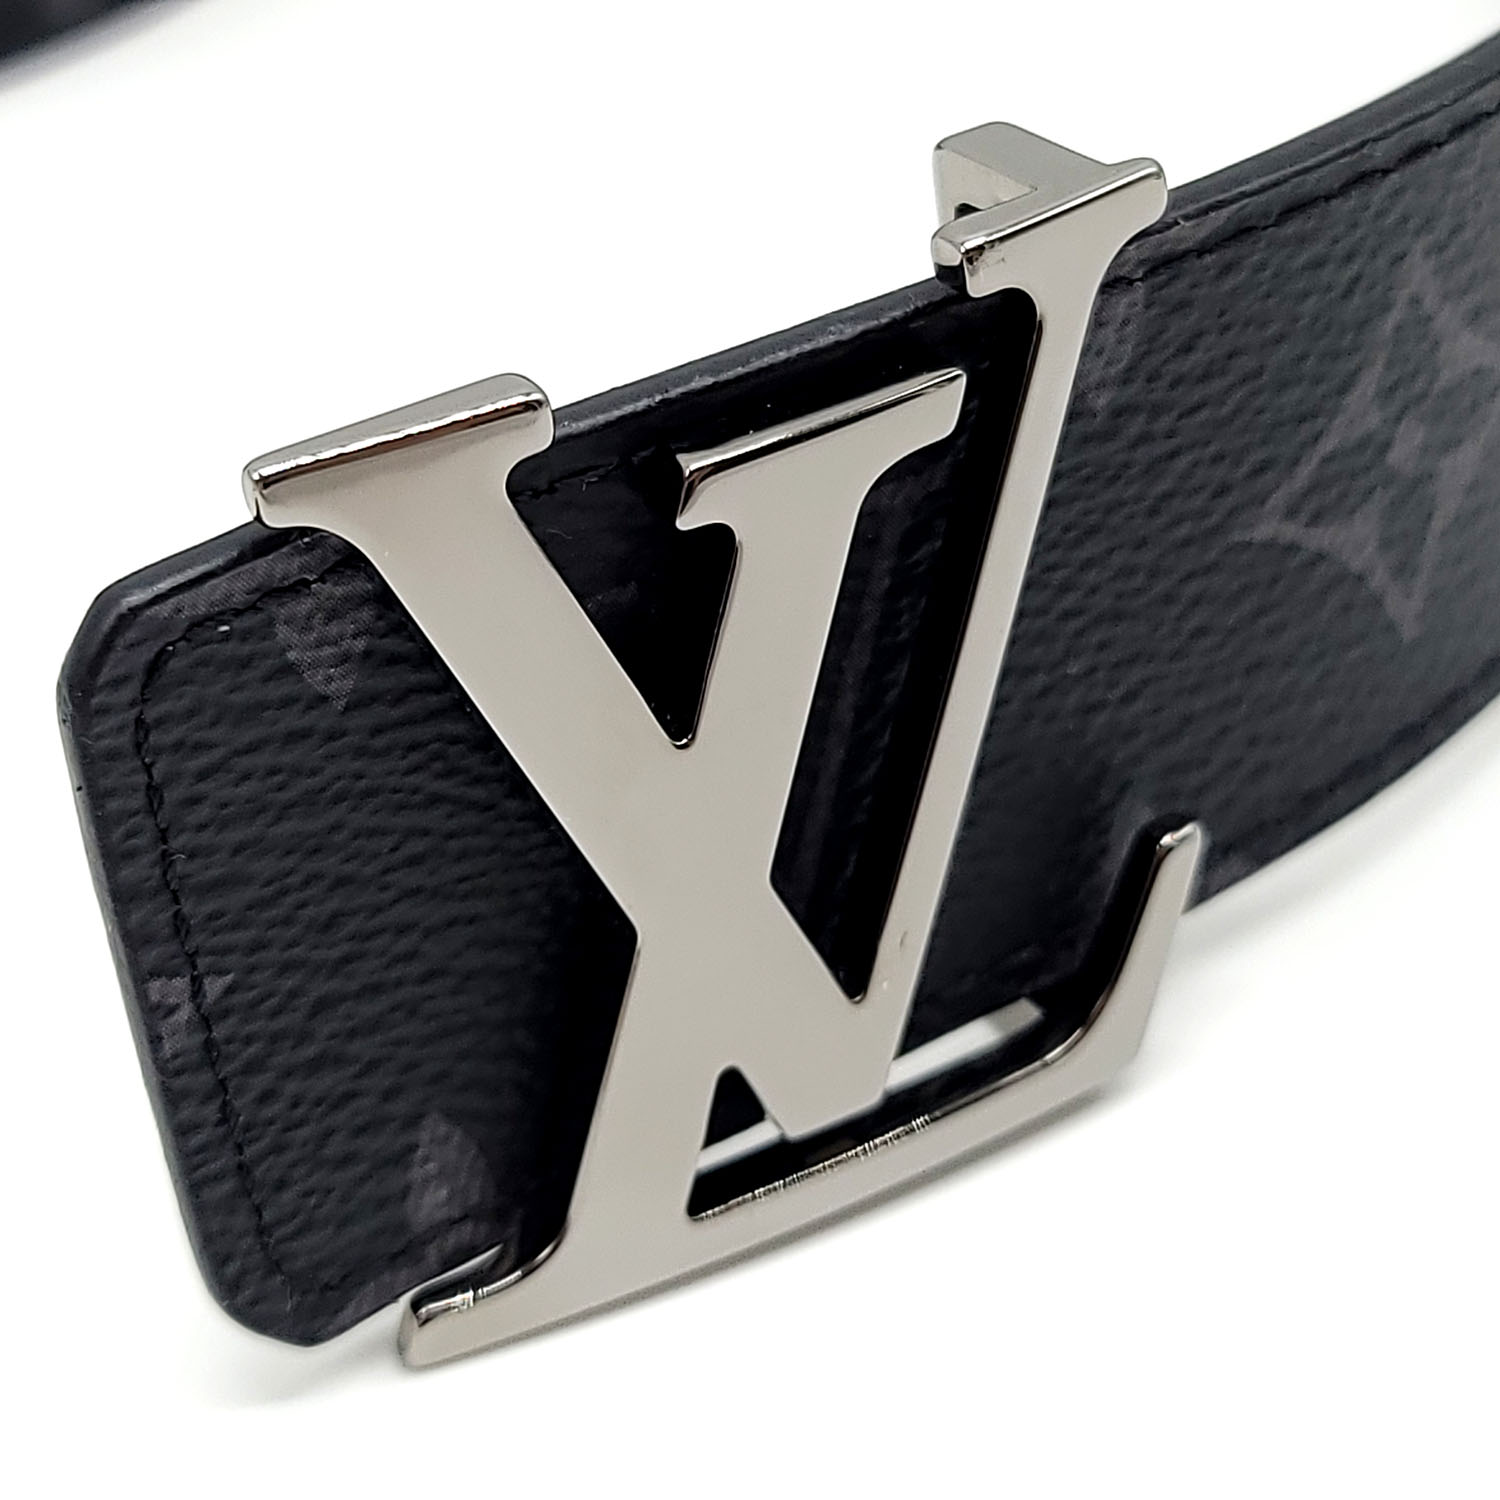 Louis Vuitton LV Initiales 40mm Reversible Belt Grey Monogram Canvas. Size 95 cm